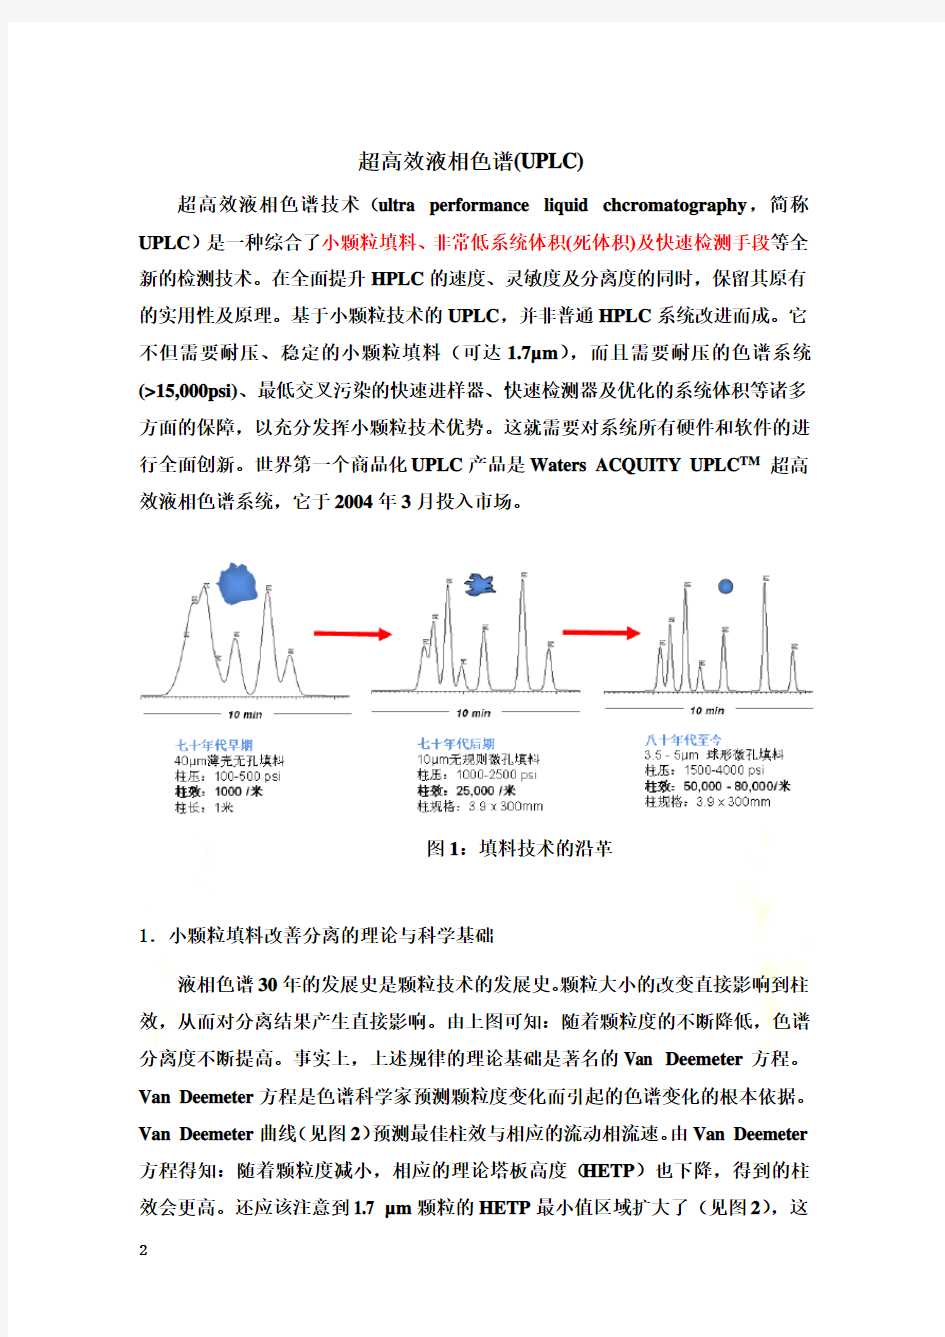 色谱分析(中国药科大学) 超高效液相色谱(UPLC)